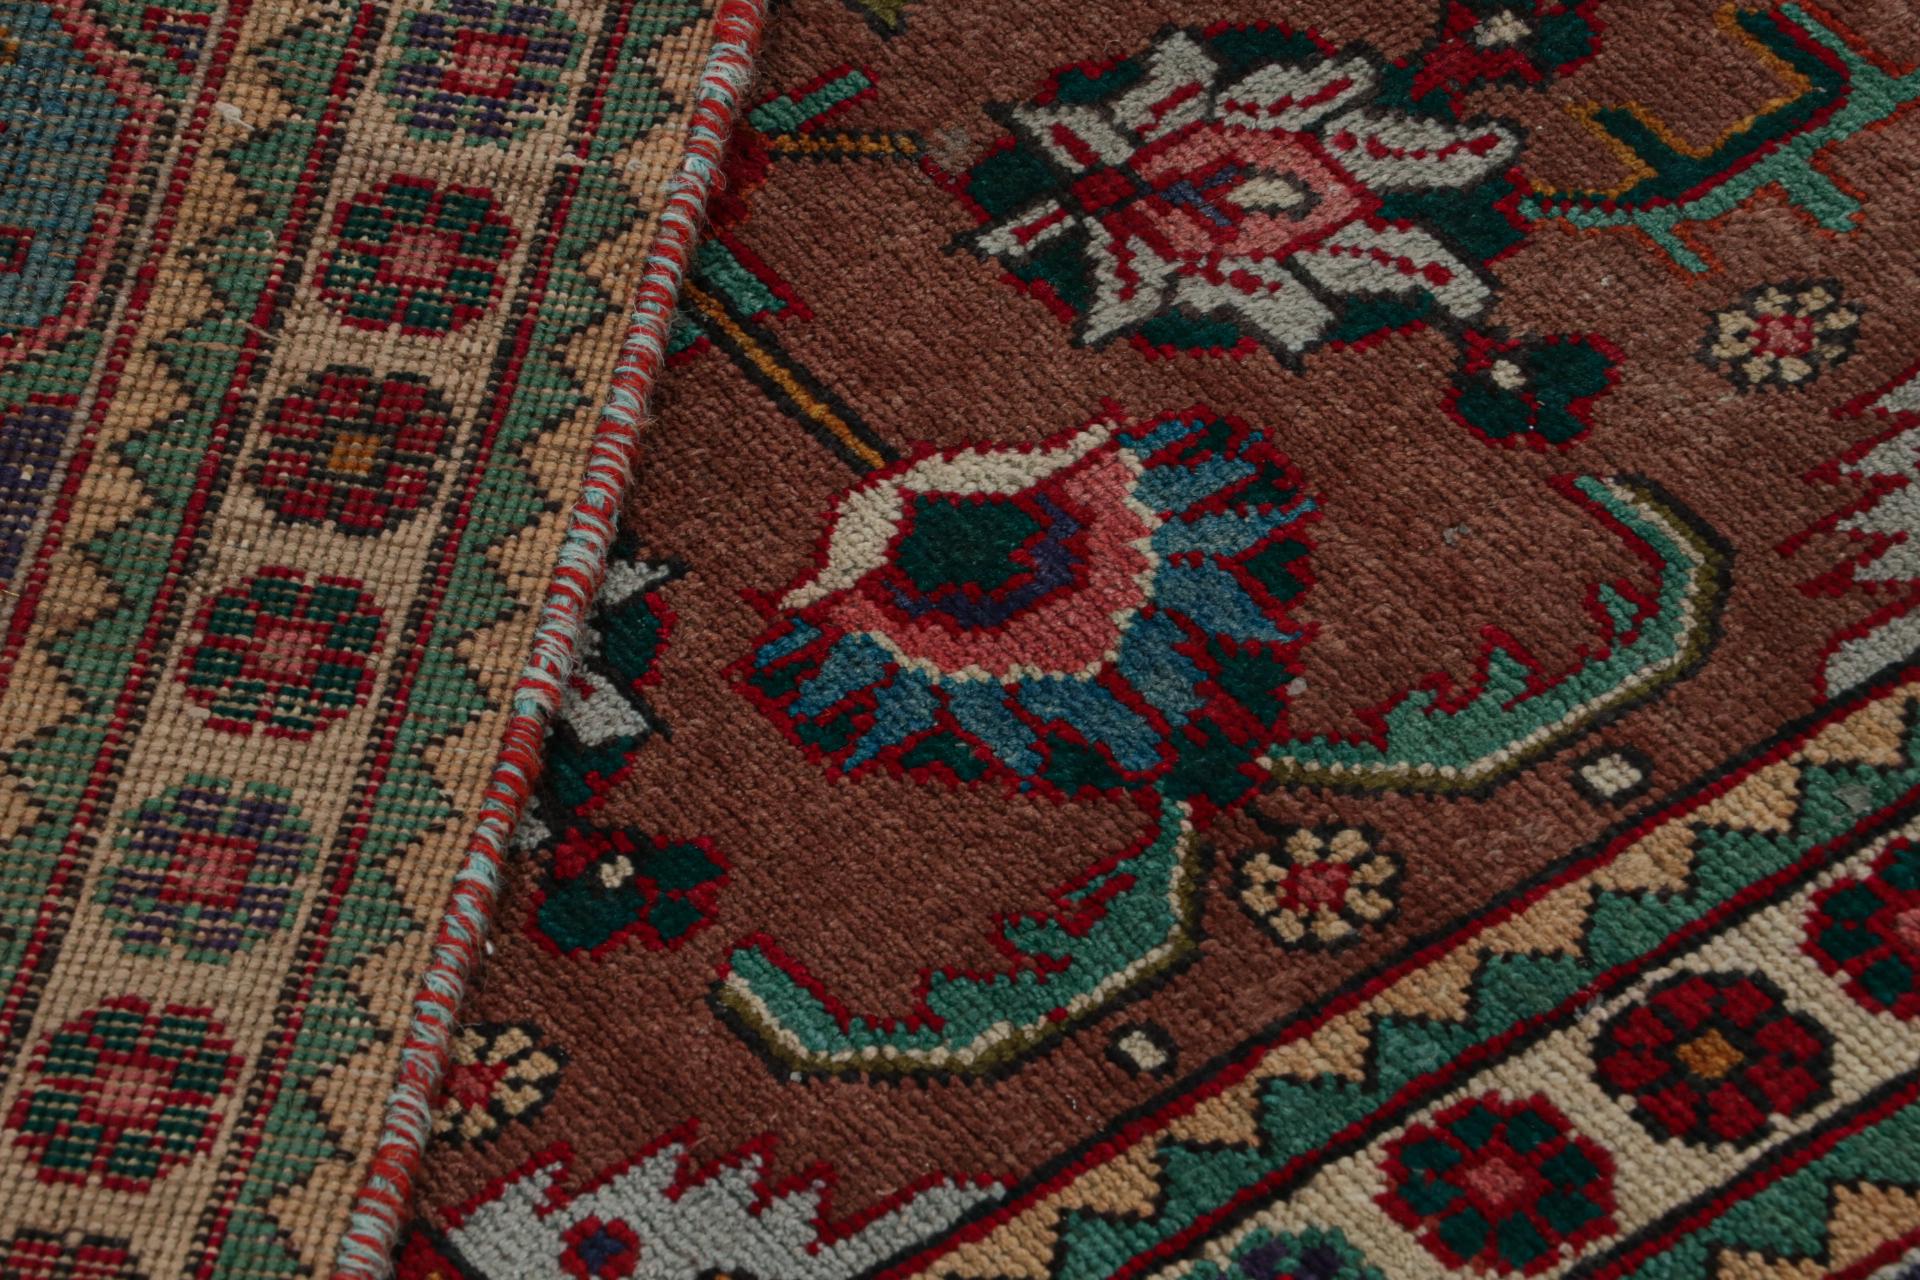 Wool Vintage Persian rug in Indigo, Beige-Brown Patterns by Rug & Kilim For Sale